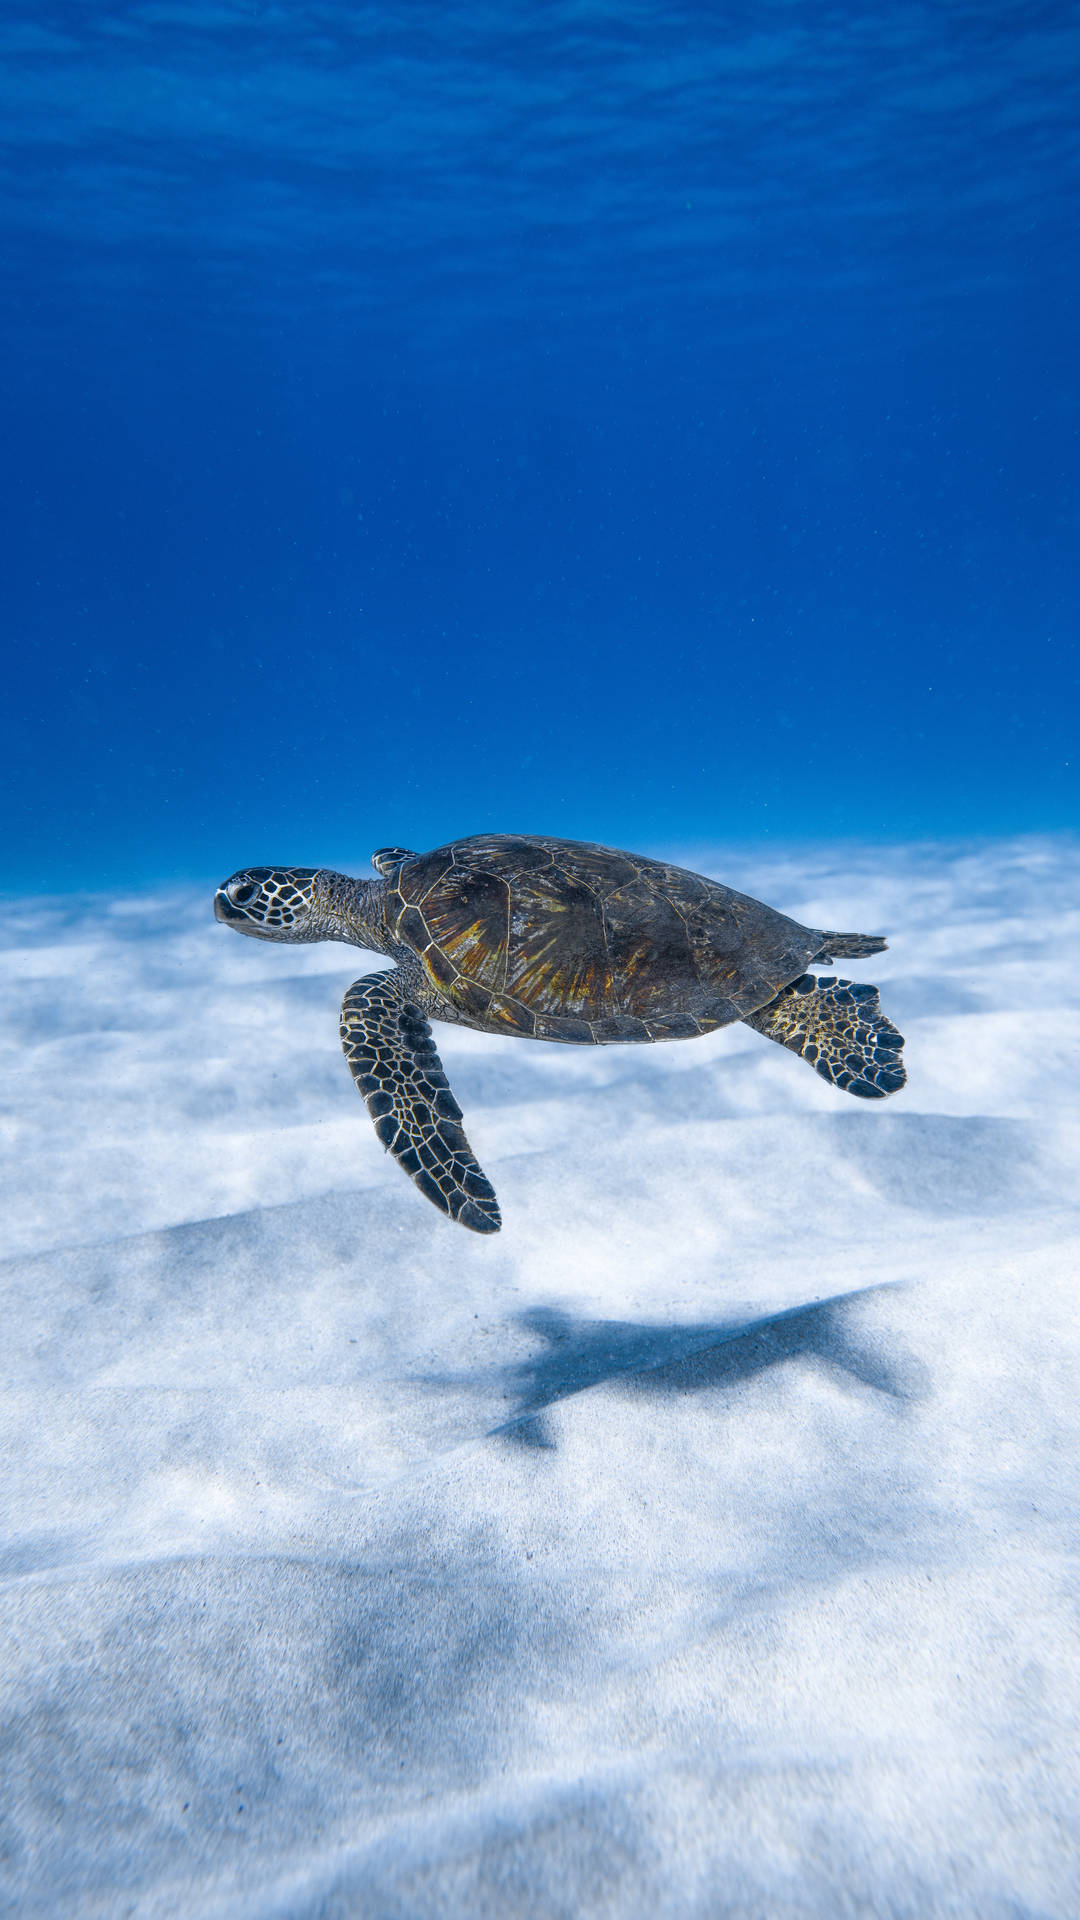 Cute Turtle Under Blue Ocean